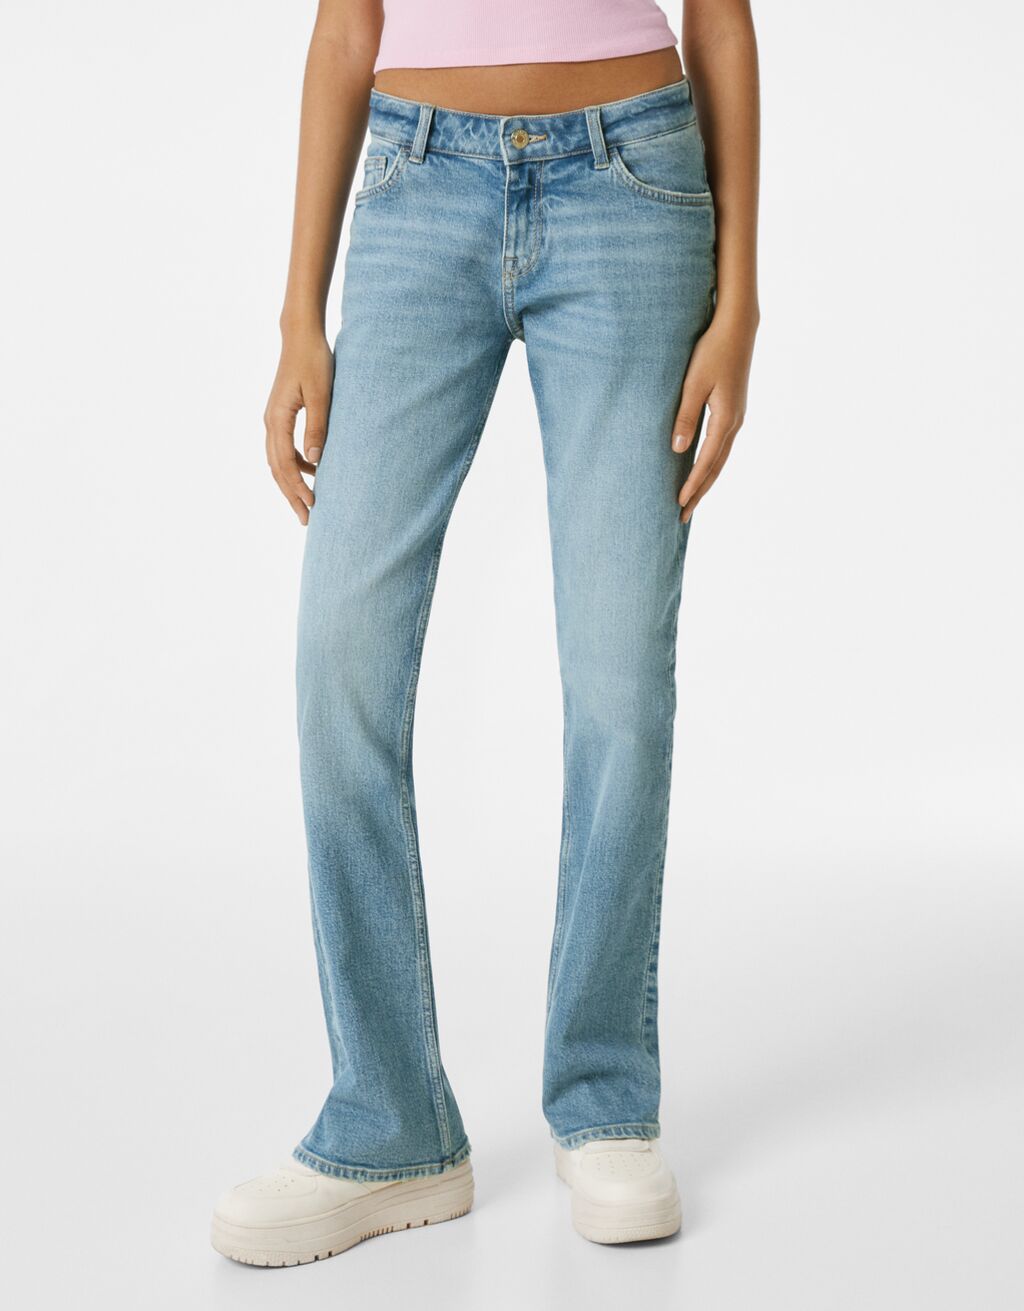 ג'ינס low rise מתרחבים בגזרת comfort fit